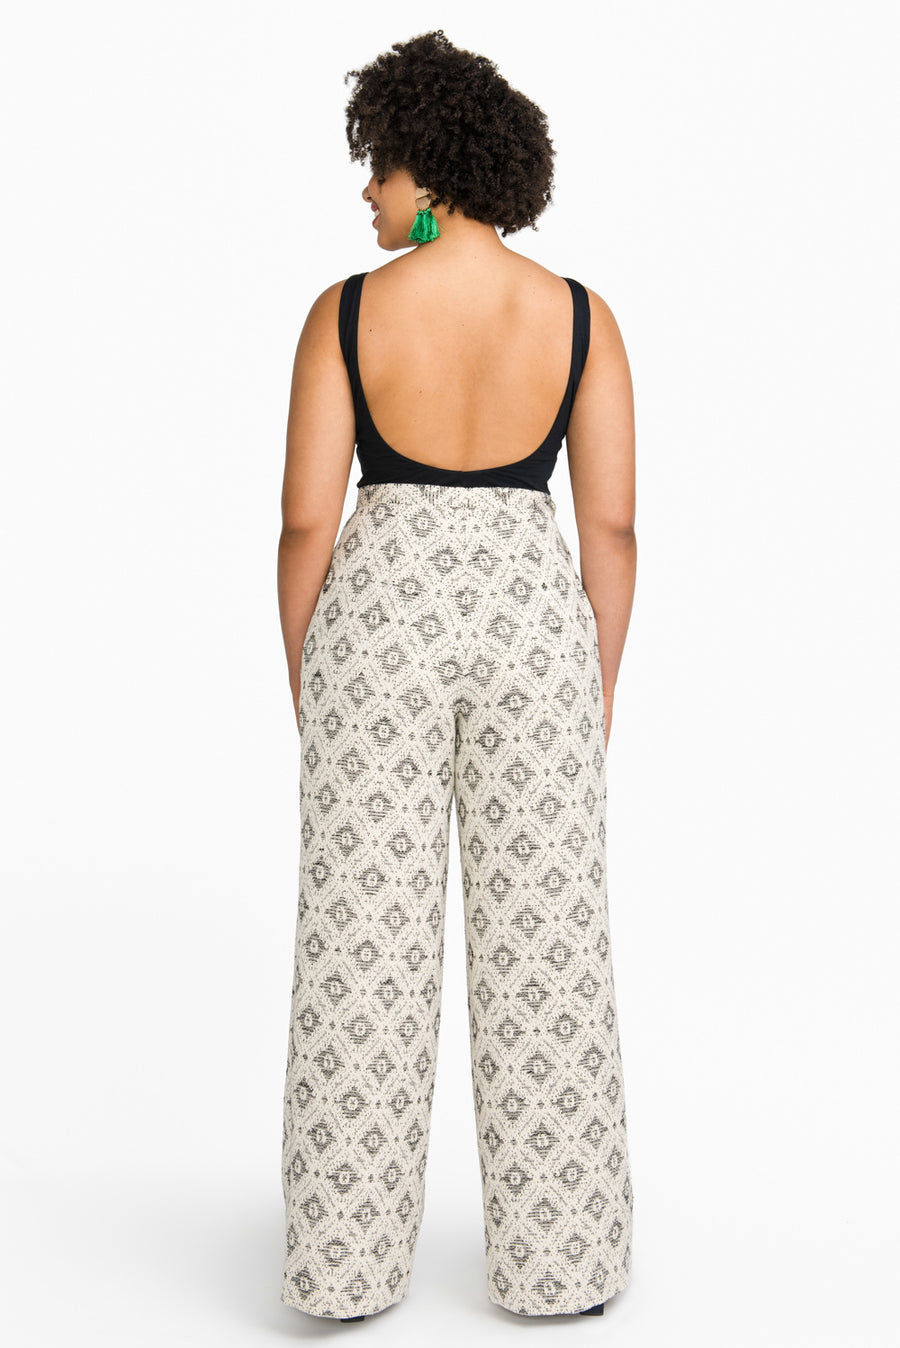 Jenny High-Waisted Wide legged Pants Pattern // Closet Core Patterns